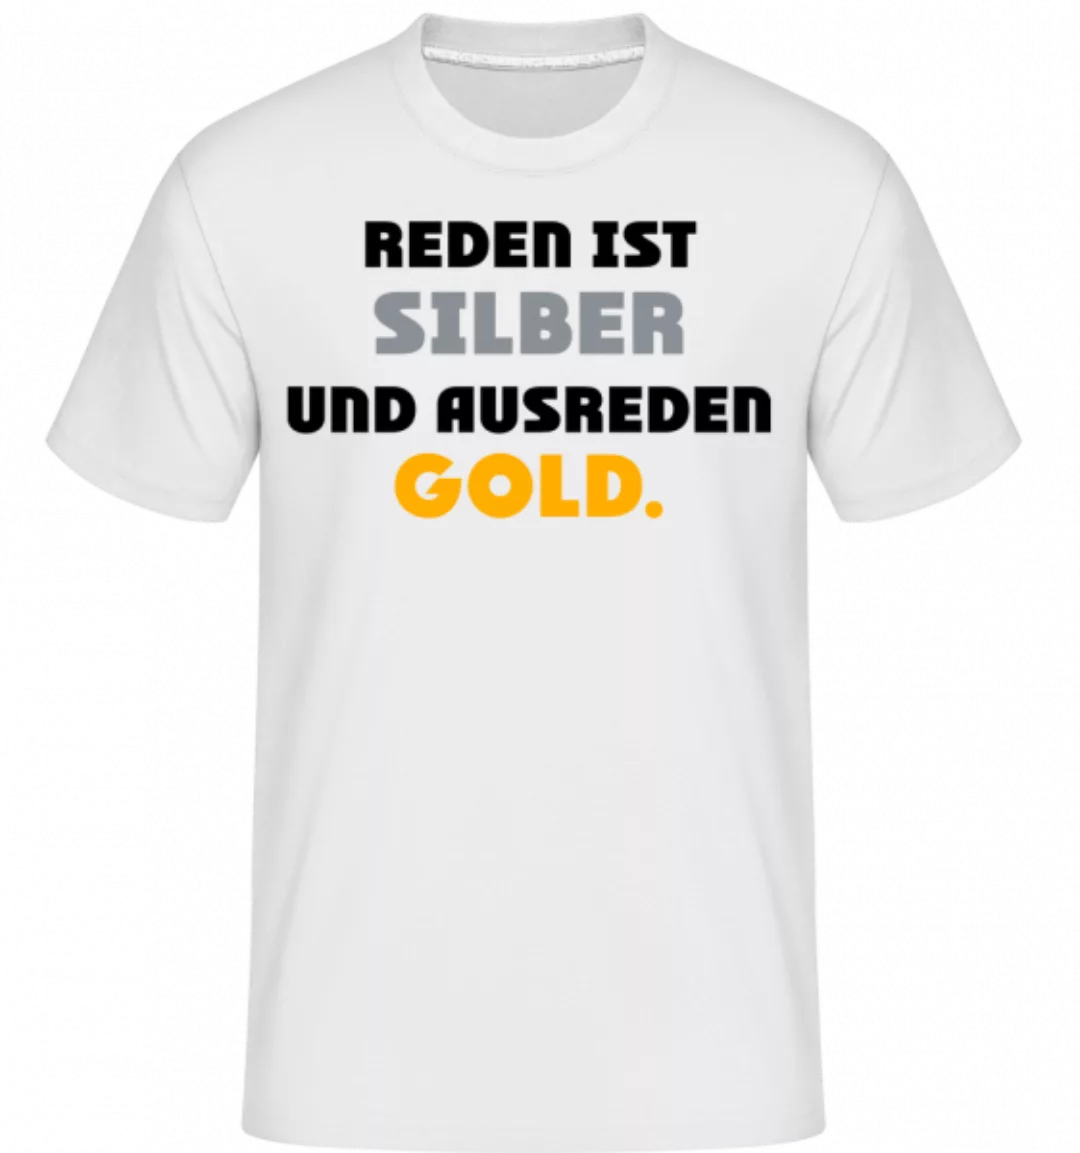 Reden Ist Silber Und Ausreden Gold · Shirtinator Männer T-Shirt günstig online kaufen